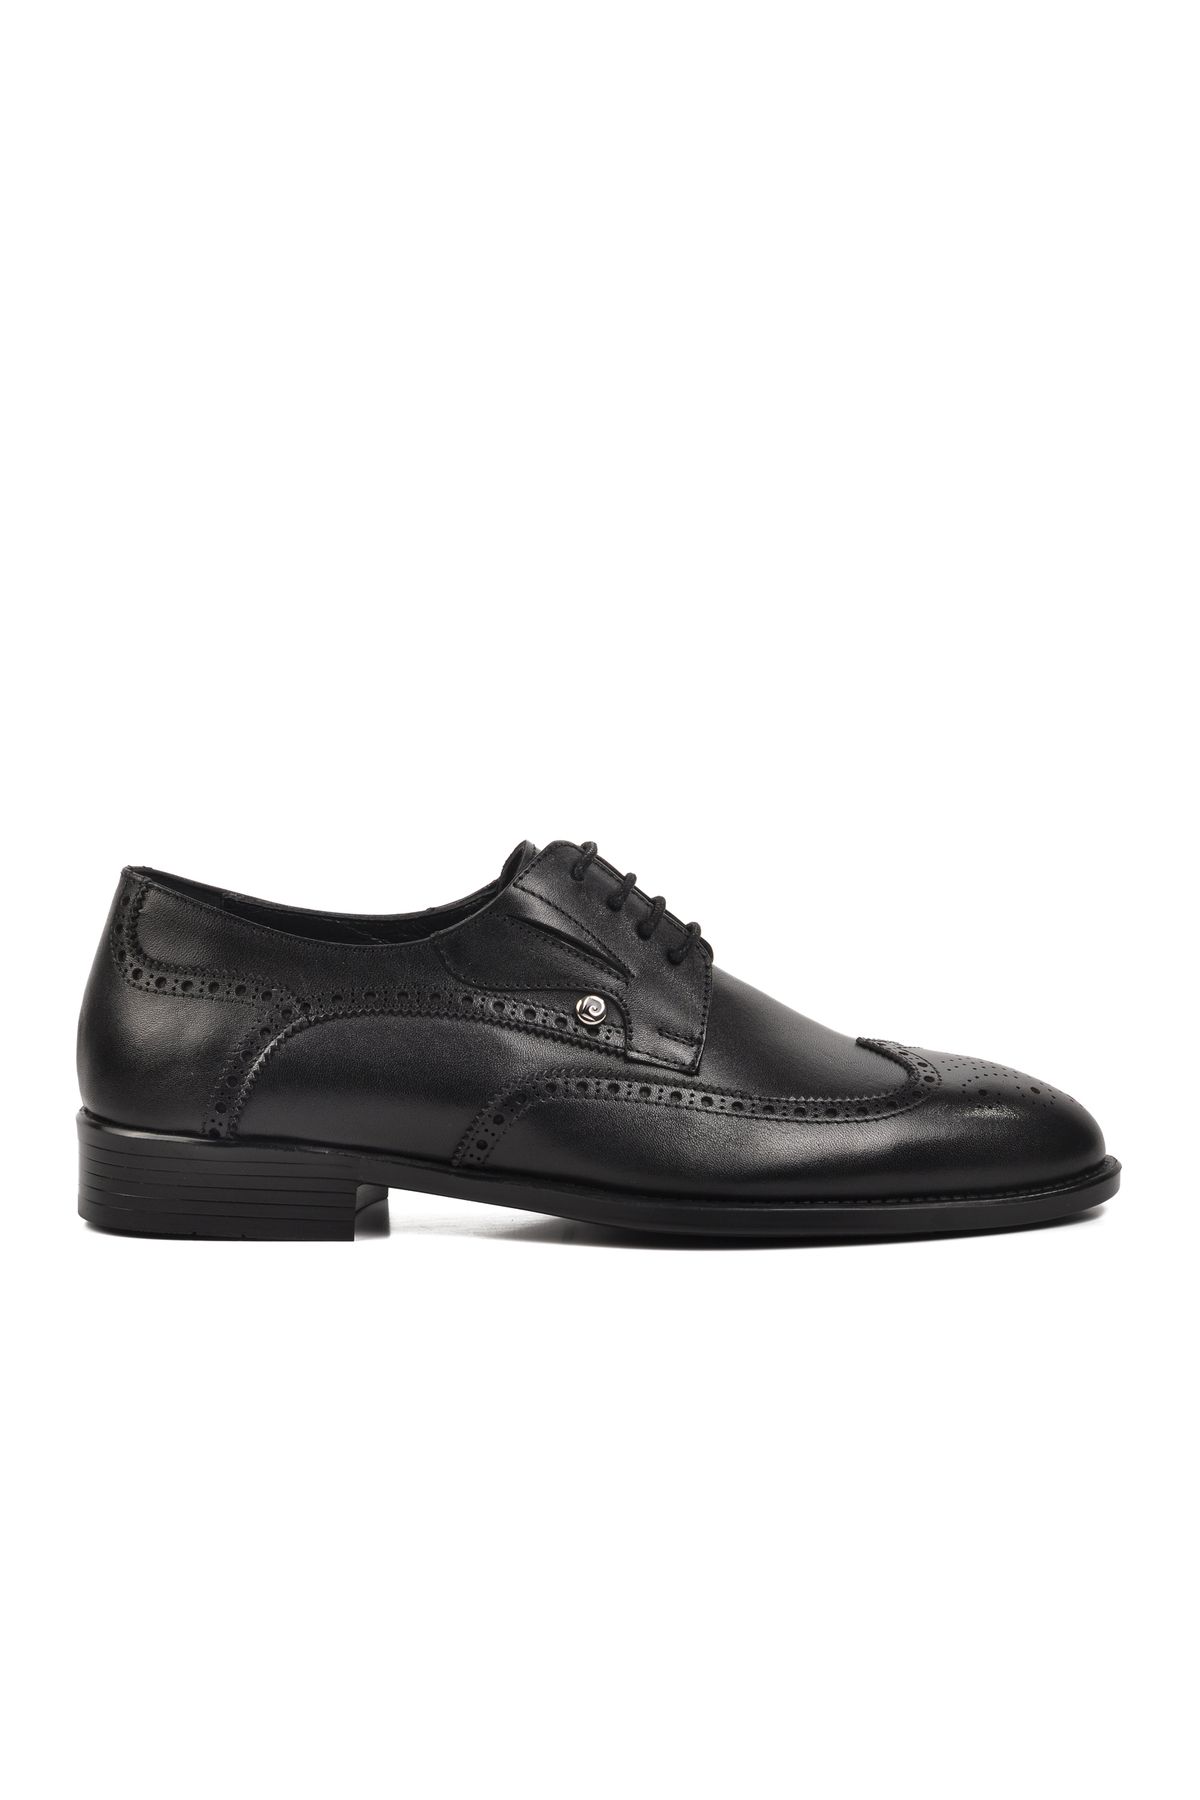 Pierre Cardin Siyah Erkek Klasik Ayakkabı